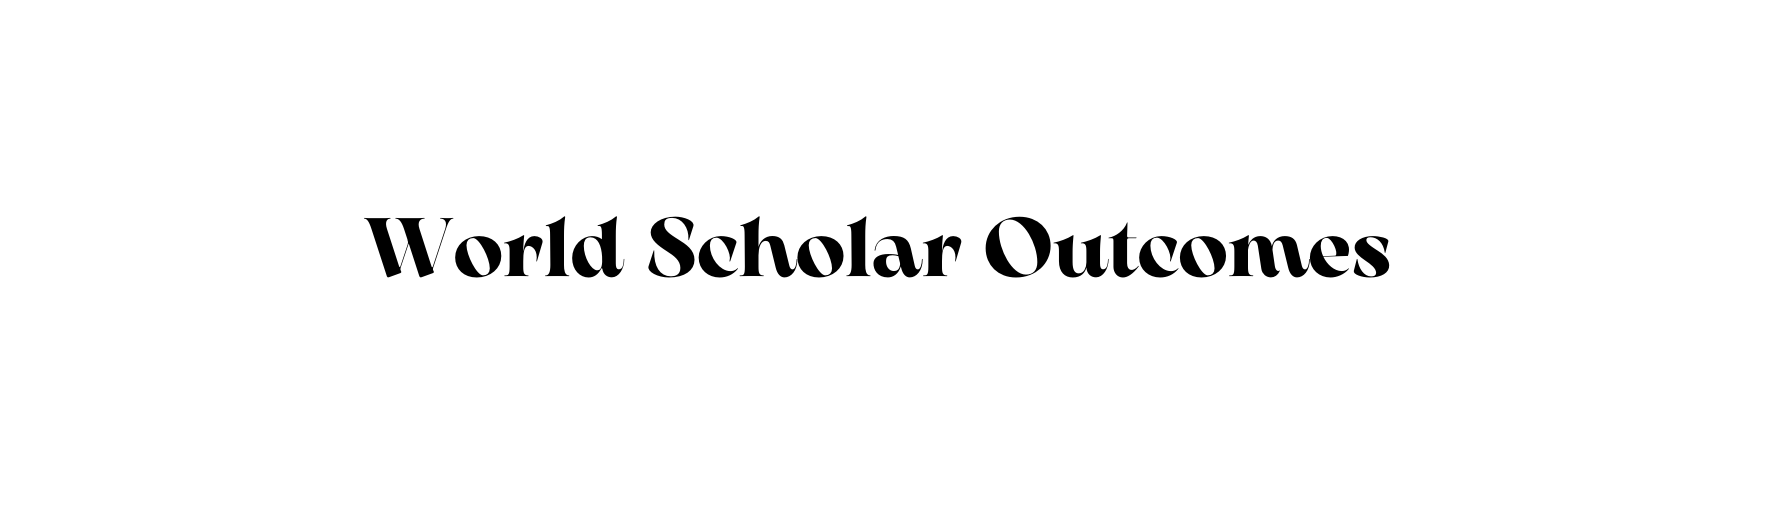 World Scholar Outcomes